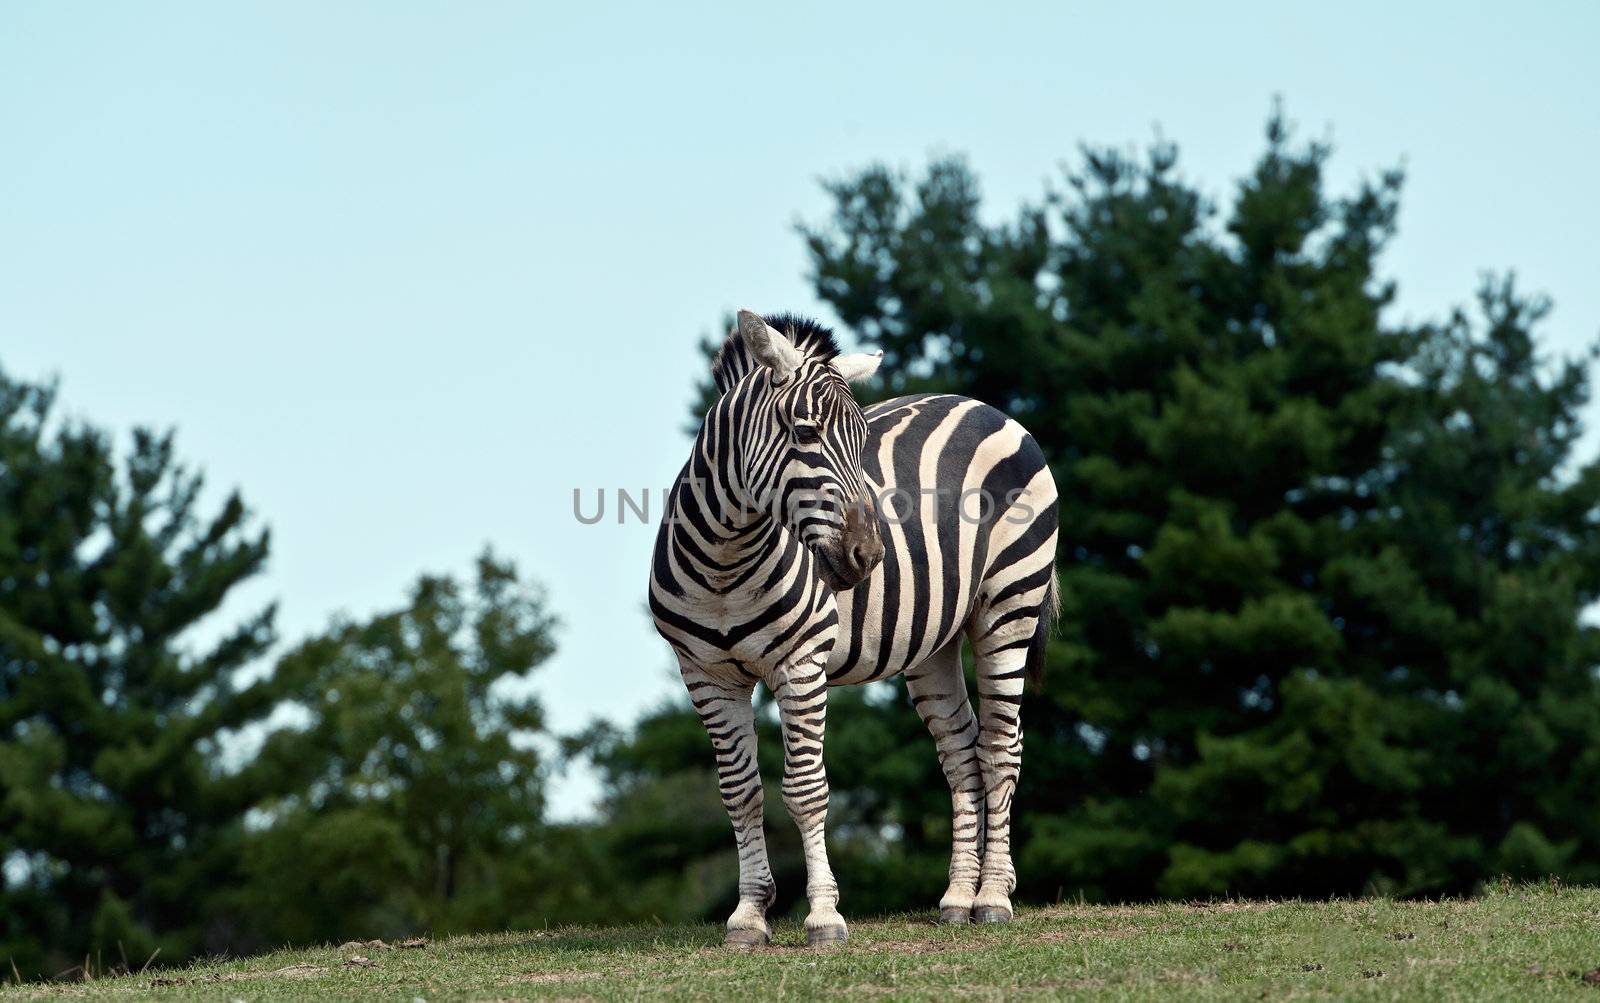 Zebra by Marcus